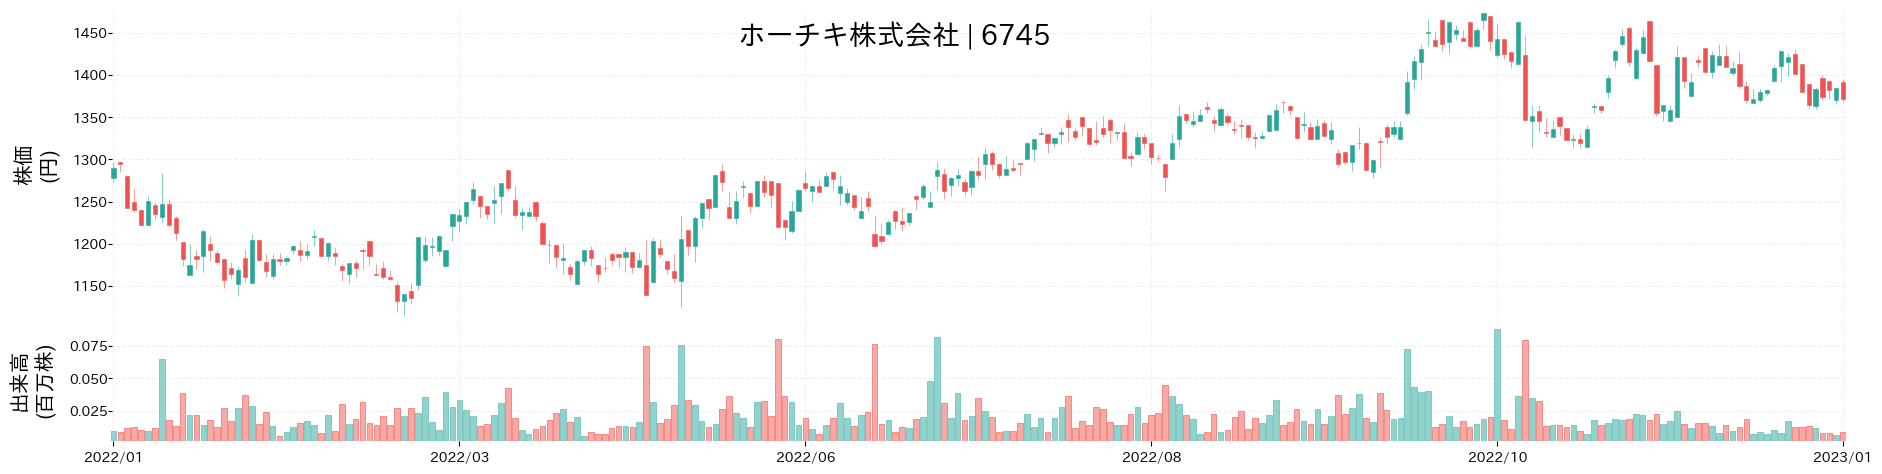 ホーチキの株価推移(2022)